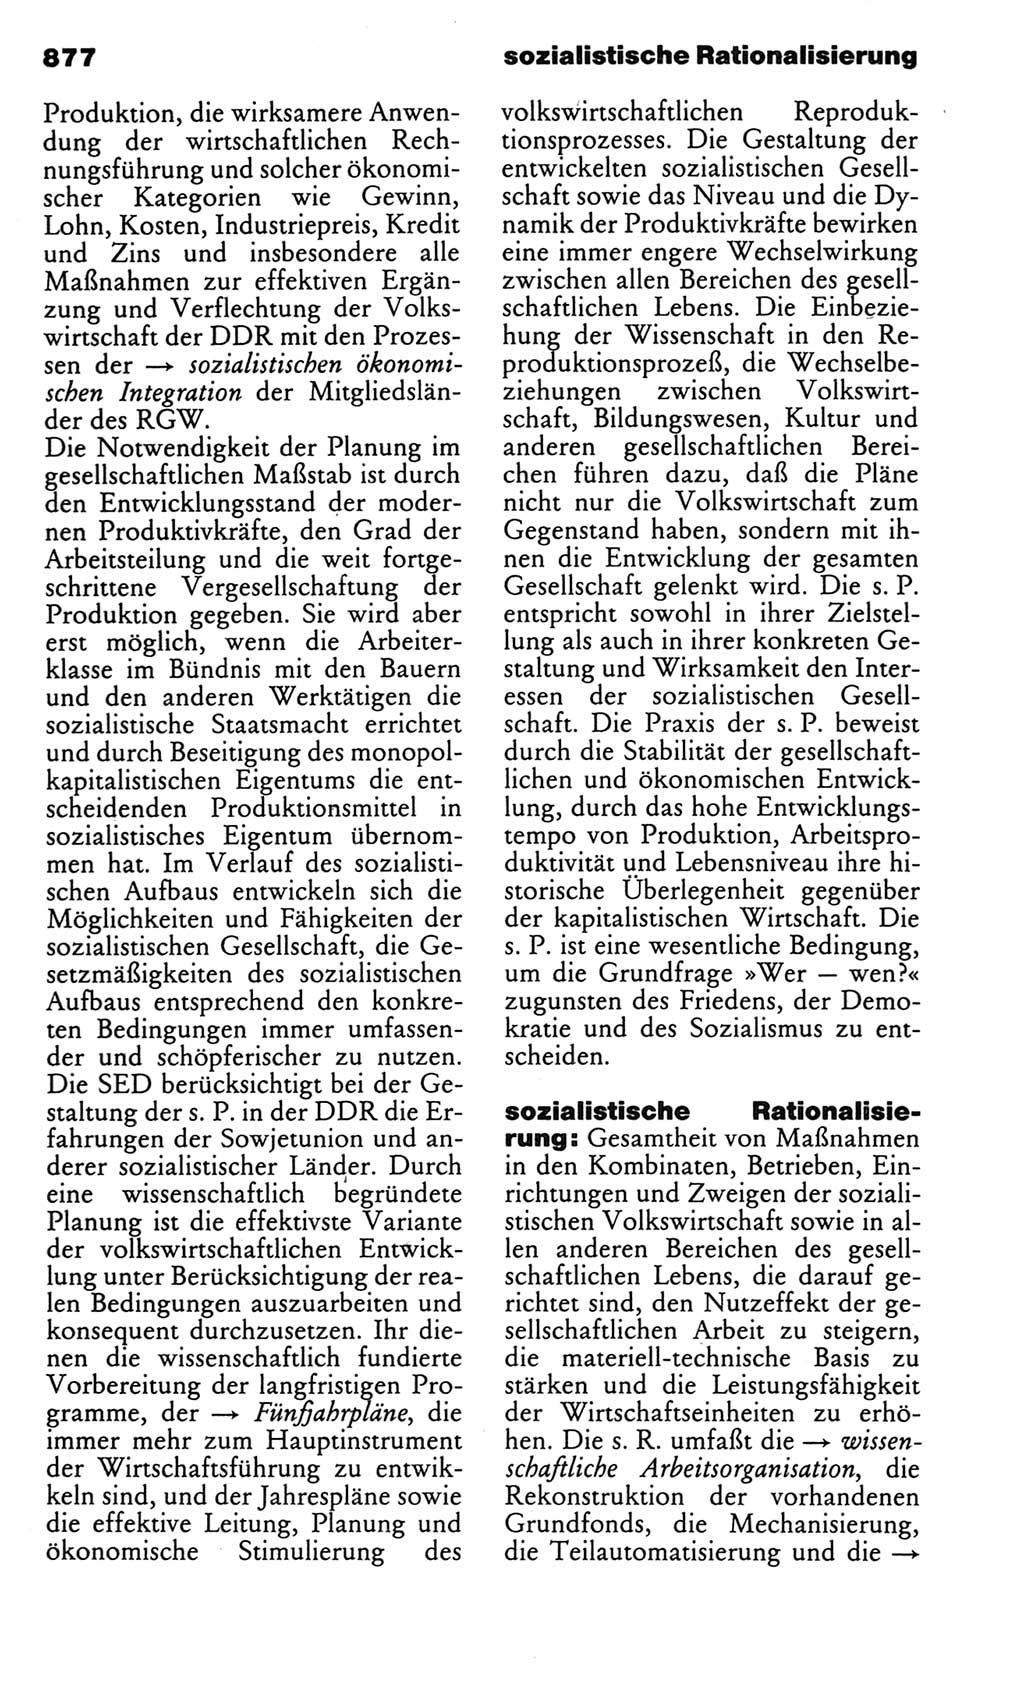 Kleines politisches Wörterbuch [Deutsche Demokratische Republik (DDR)] 1983, Seite 877 (Kl. pol. Wb. DDR 1983, S. 877)